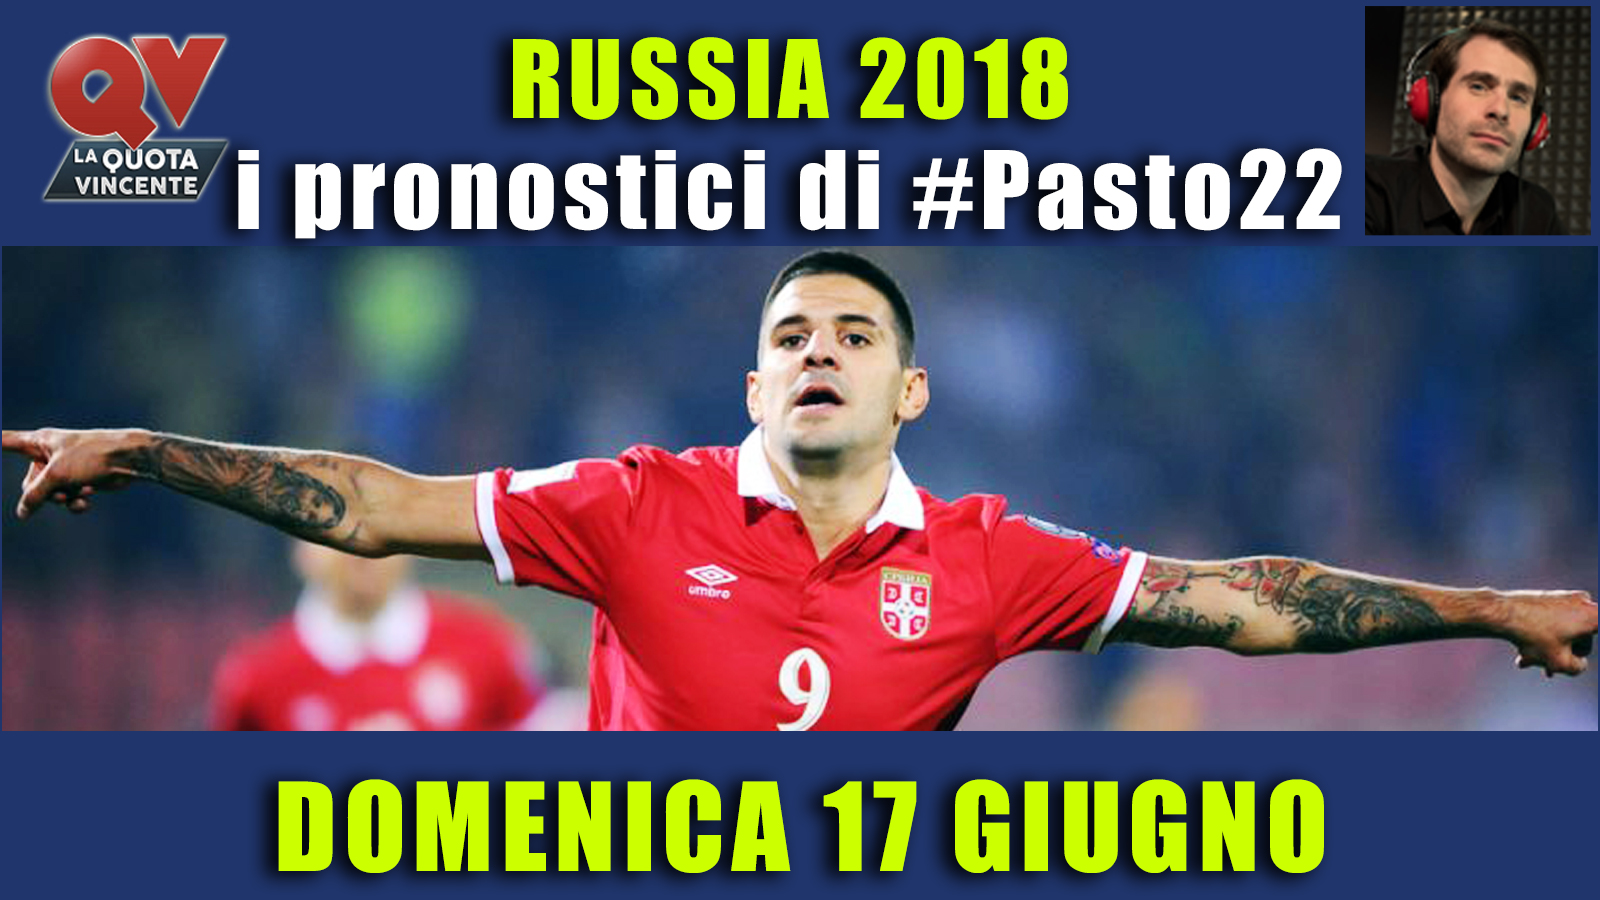 Pronostici Mondiali 17 giugno: le dritte di #Pasto22 a Russia 2018